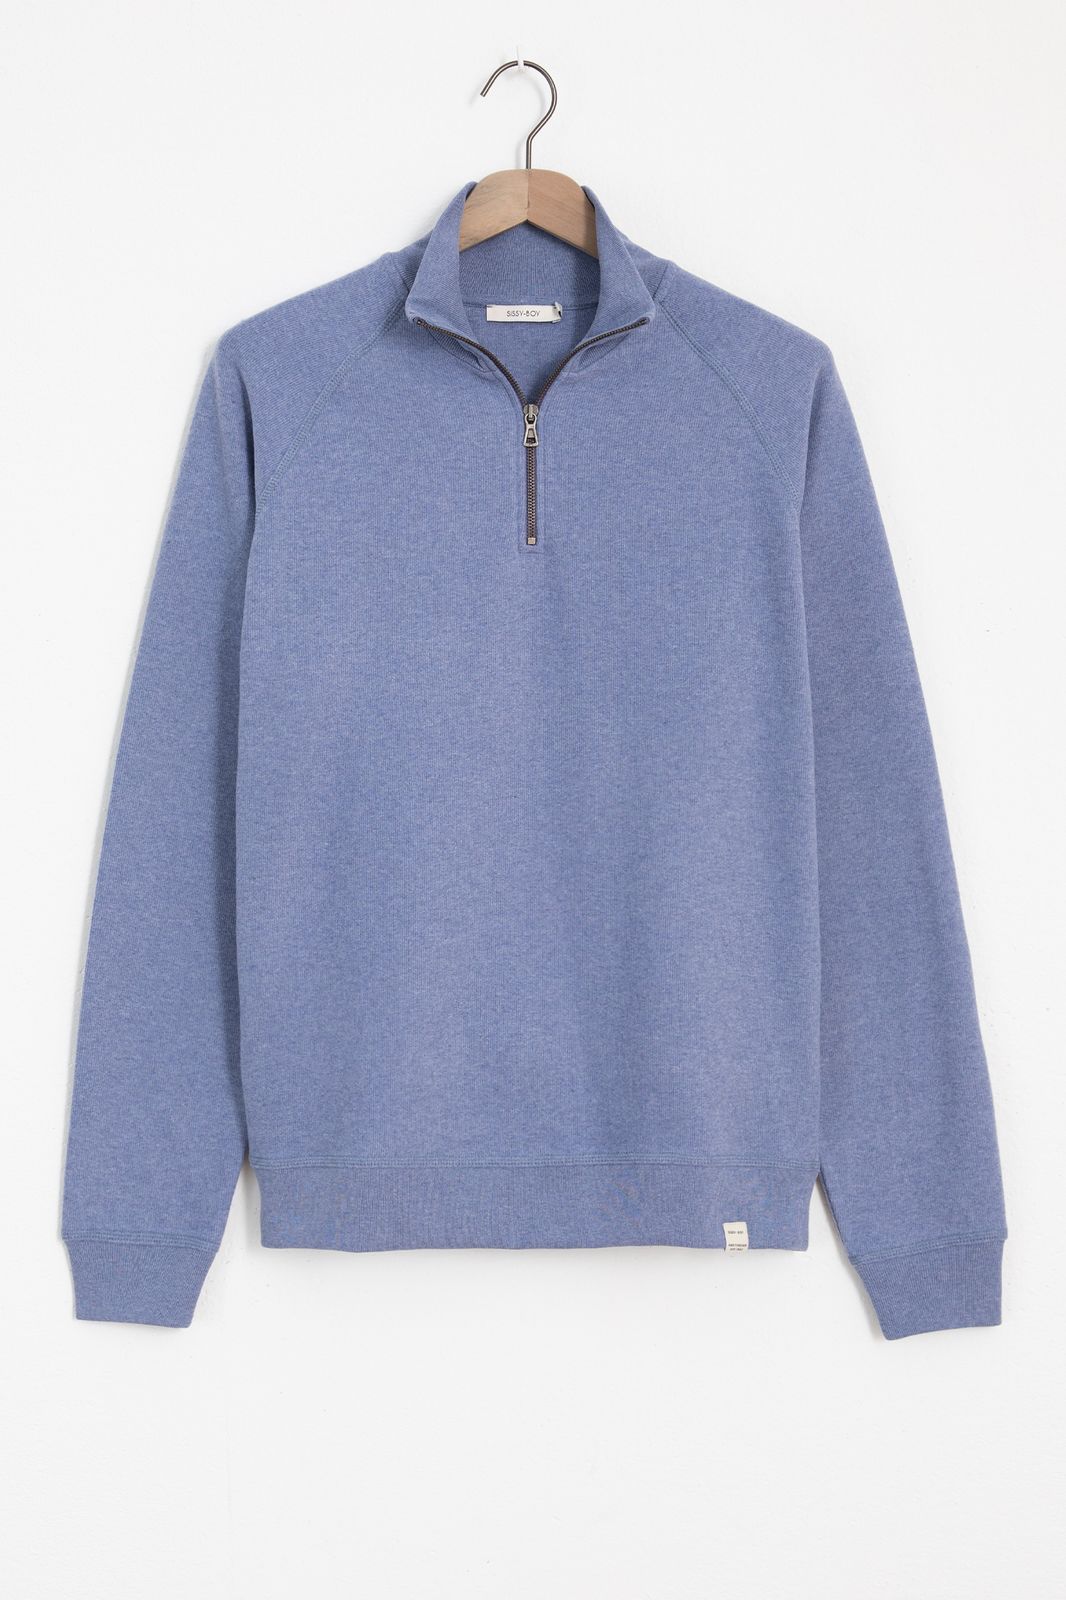 Sweater mit Reißverschluss - blau